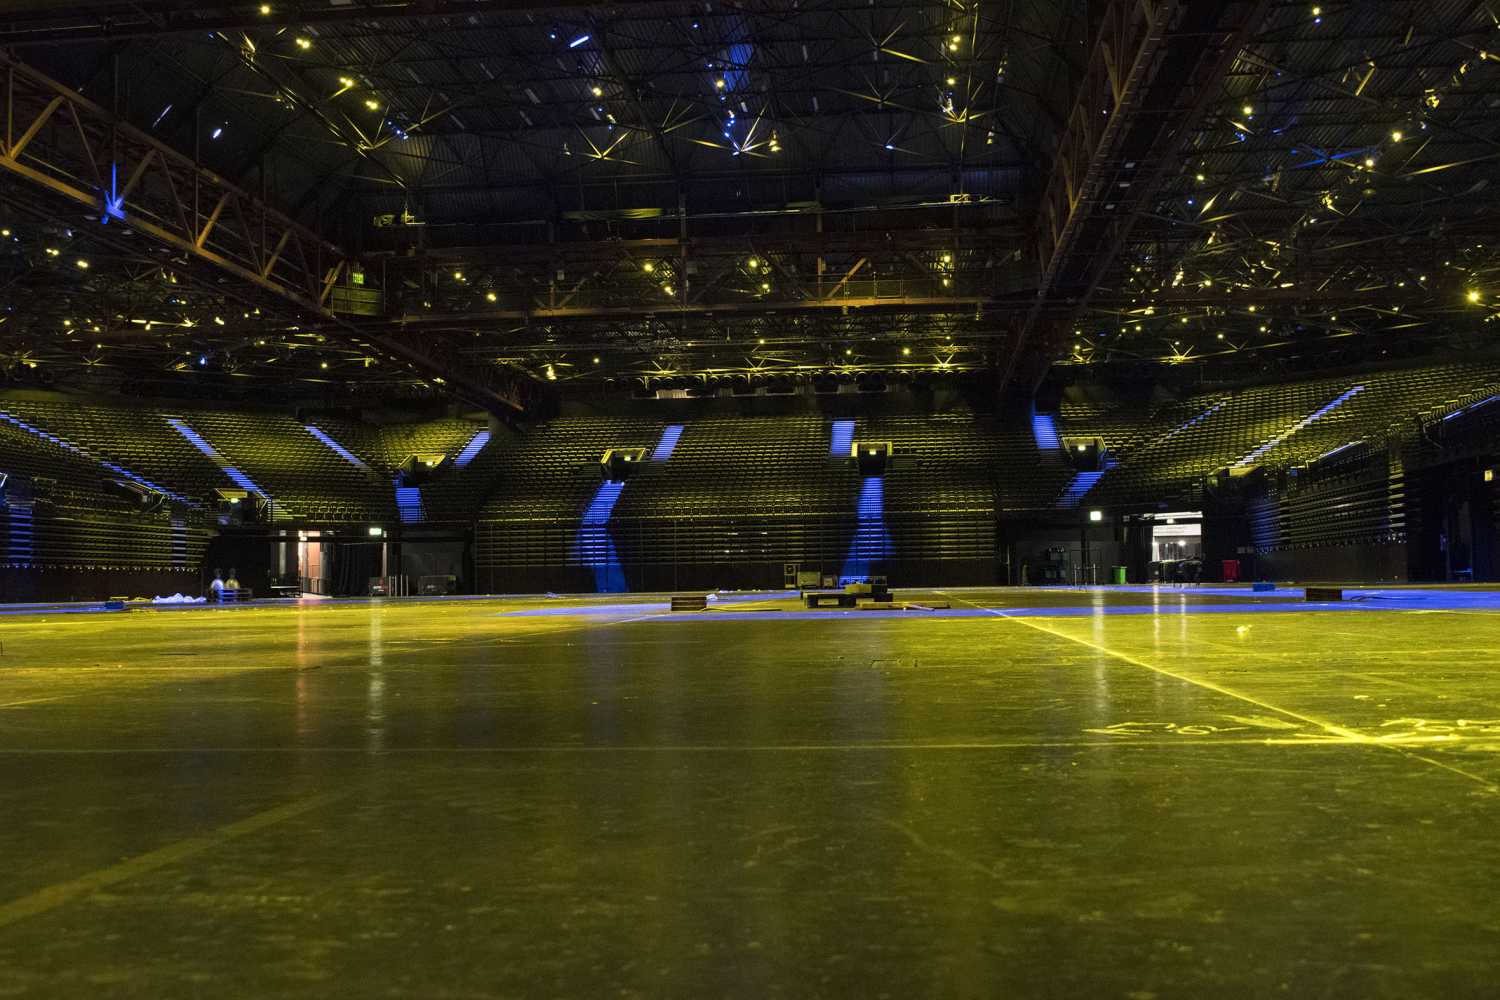 The 15,700-capacity venue is the Midlands’ premier entertainment destination